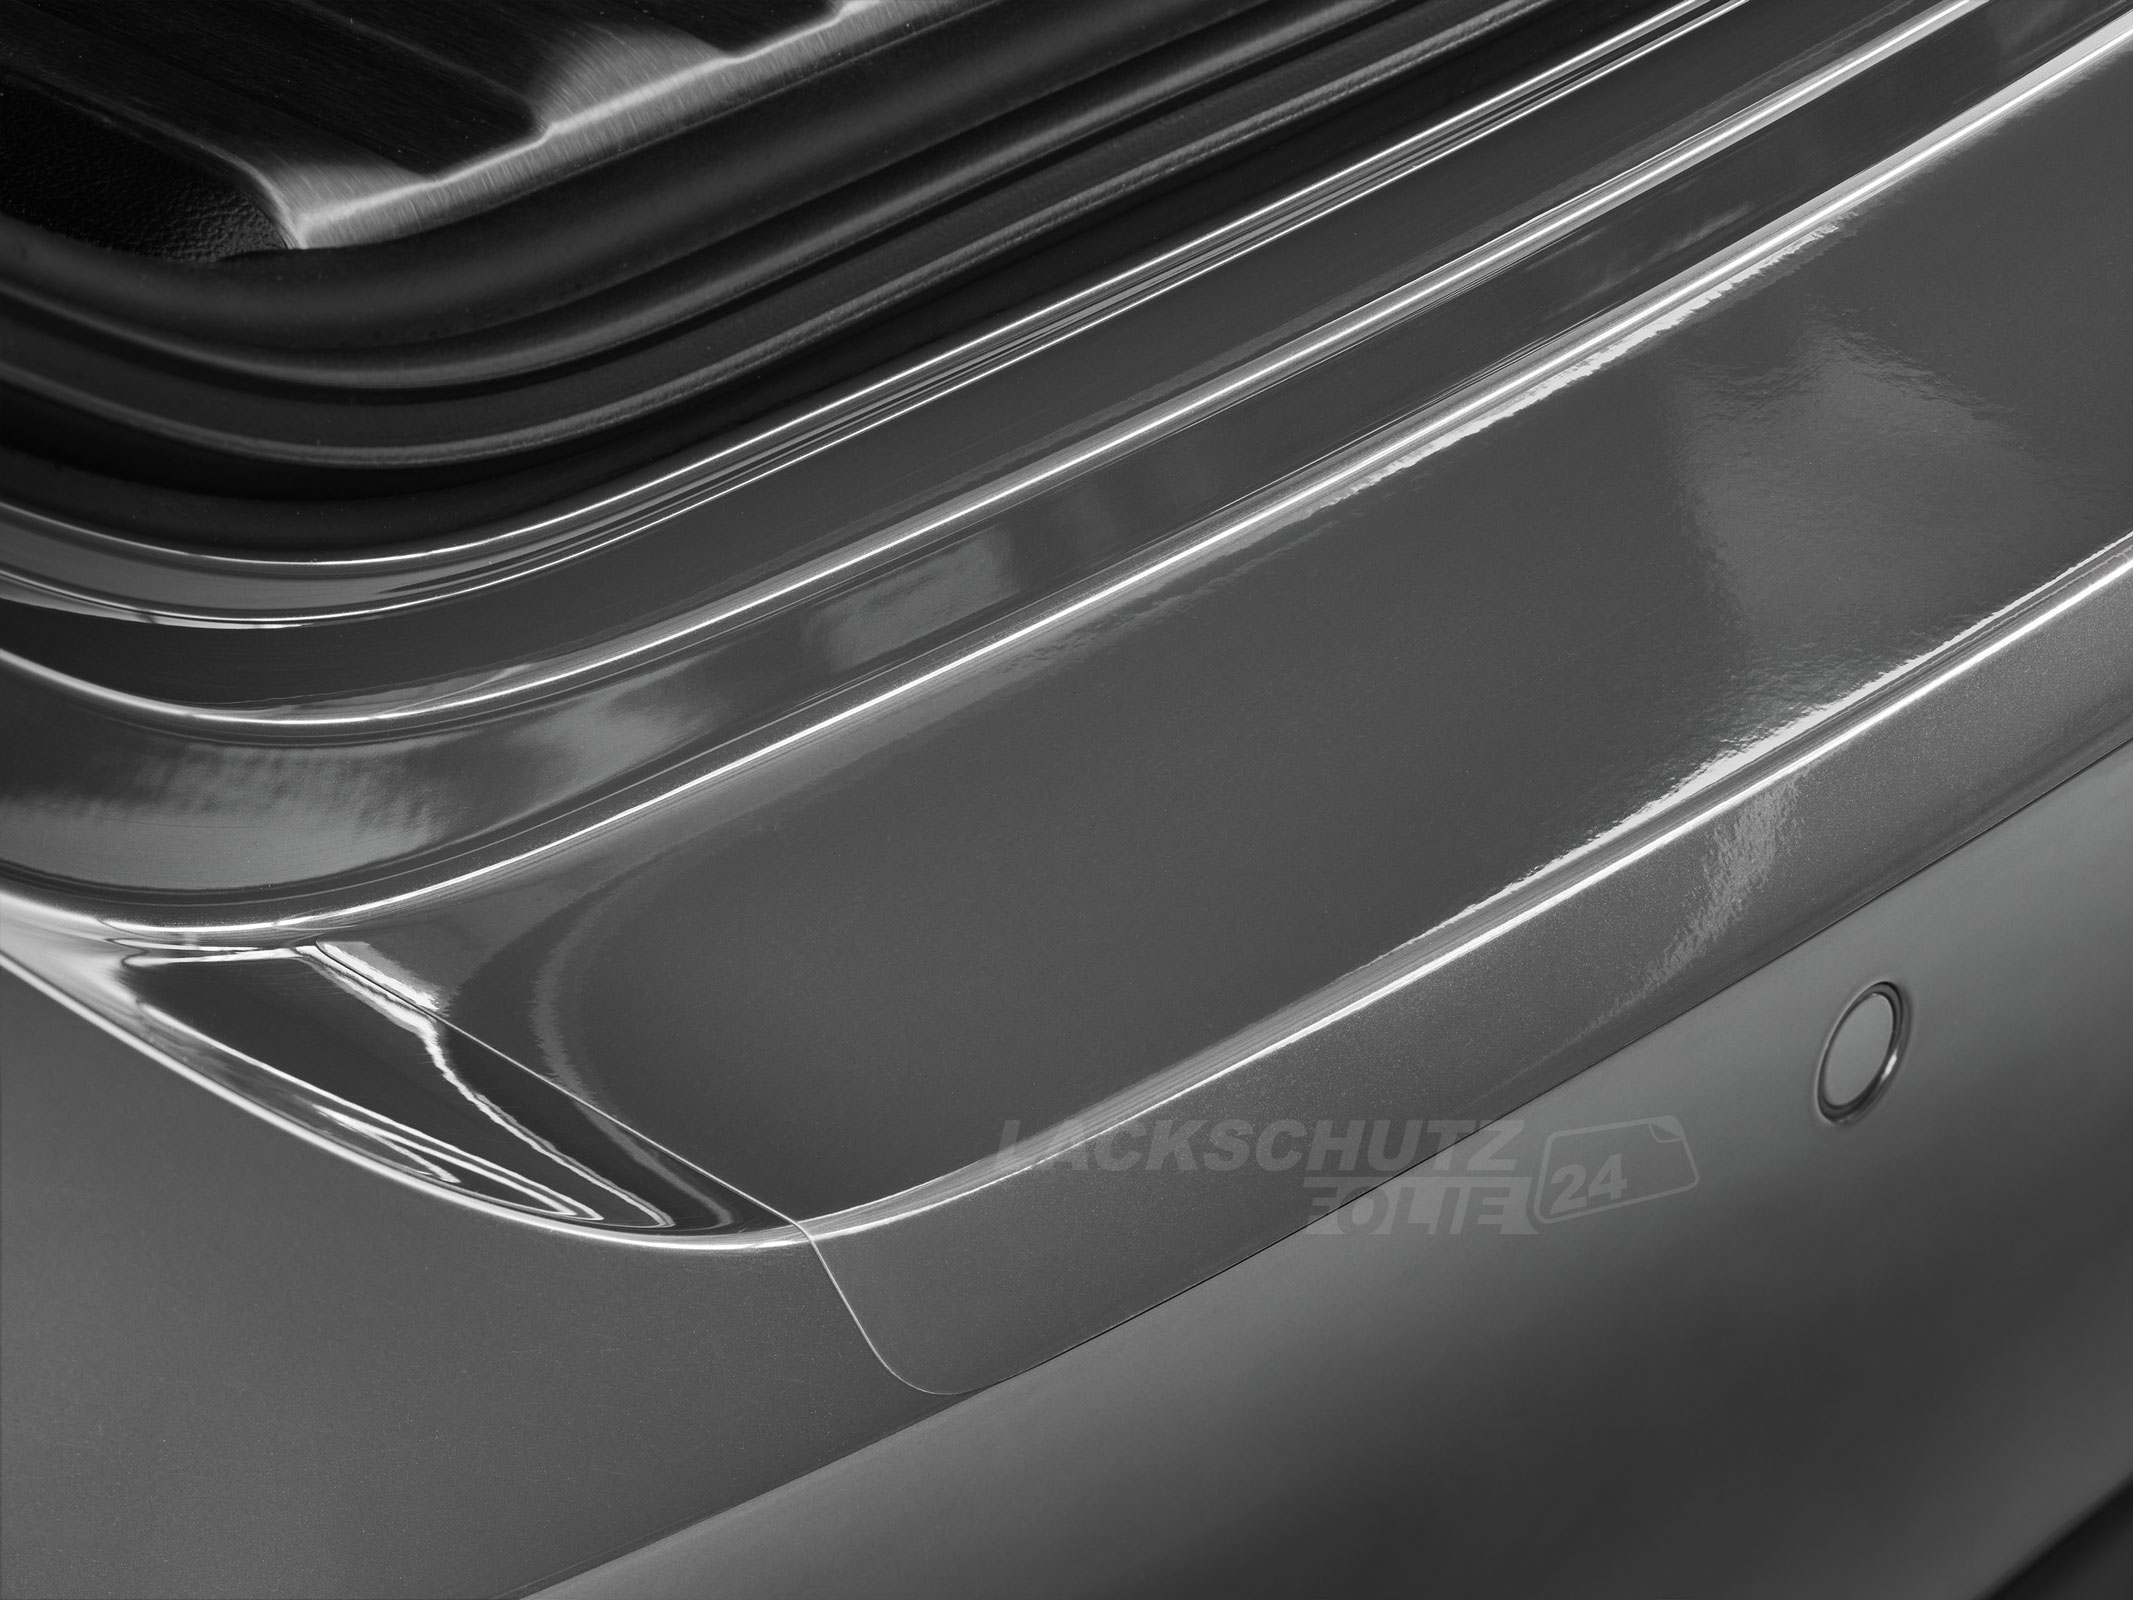 Ladekantenschutzfolie - Transparent Glatt Hochglänzend für Mercedes-Benz C-Klasse Limousine Typ W204, BJ 2007-2013